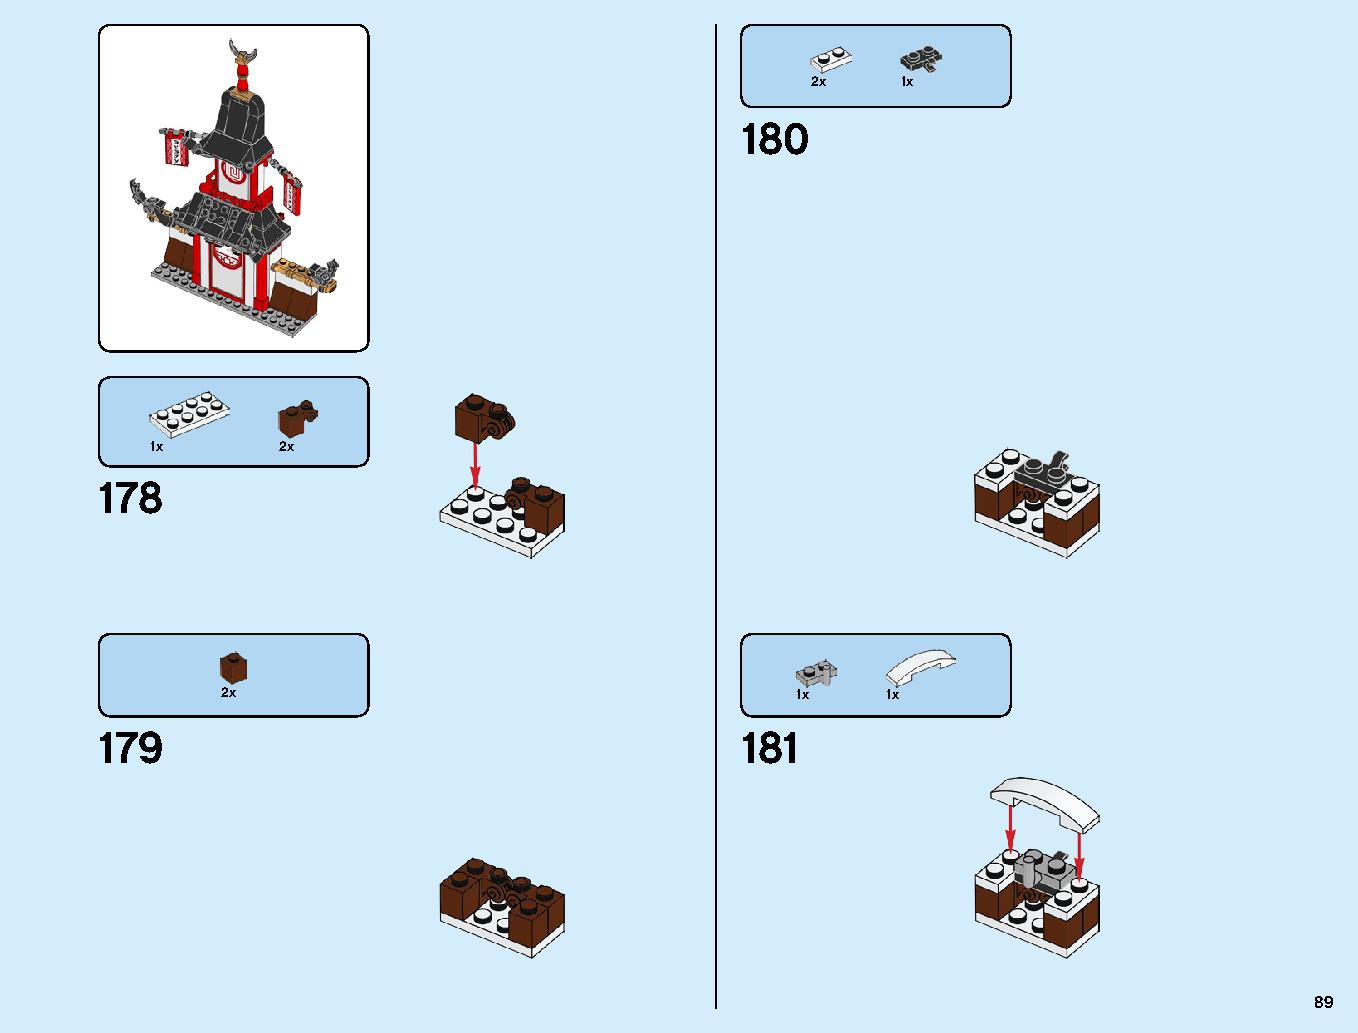 ニンジャ道場 70670 レゴの商品情報 レゴの説明書・組立方法 89 page